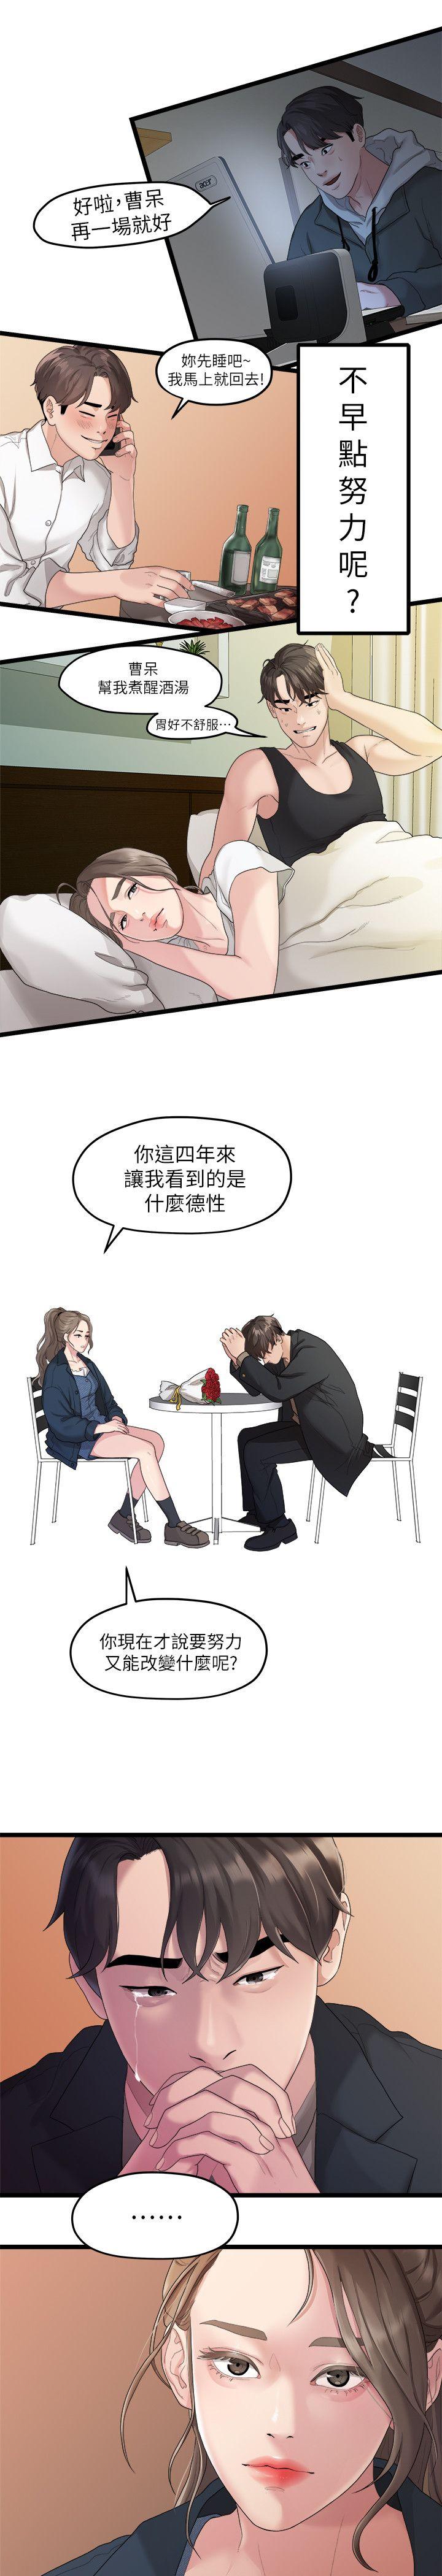 韩国污漫画 我們的非常關系 第19话-是因为那小子吧? 17